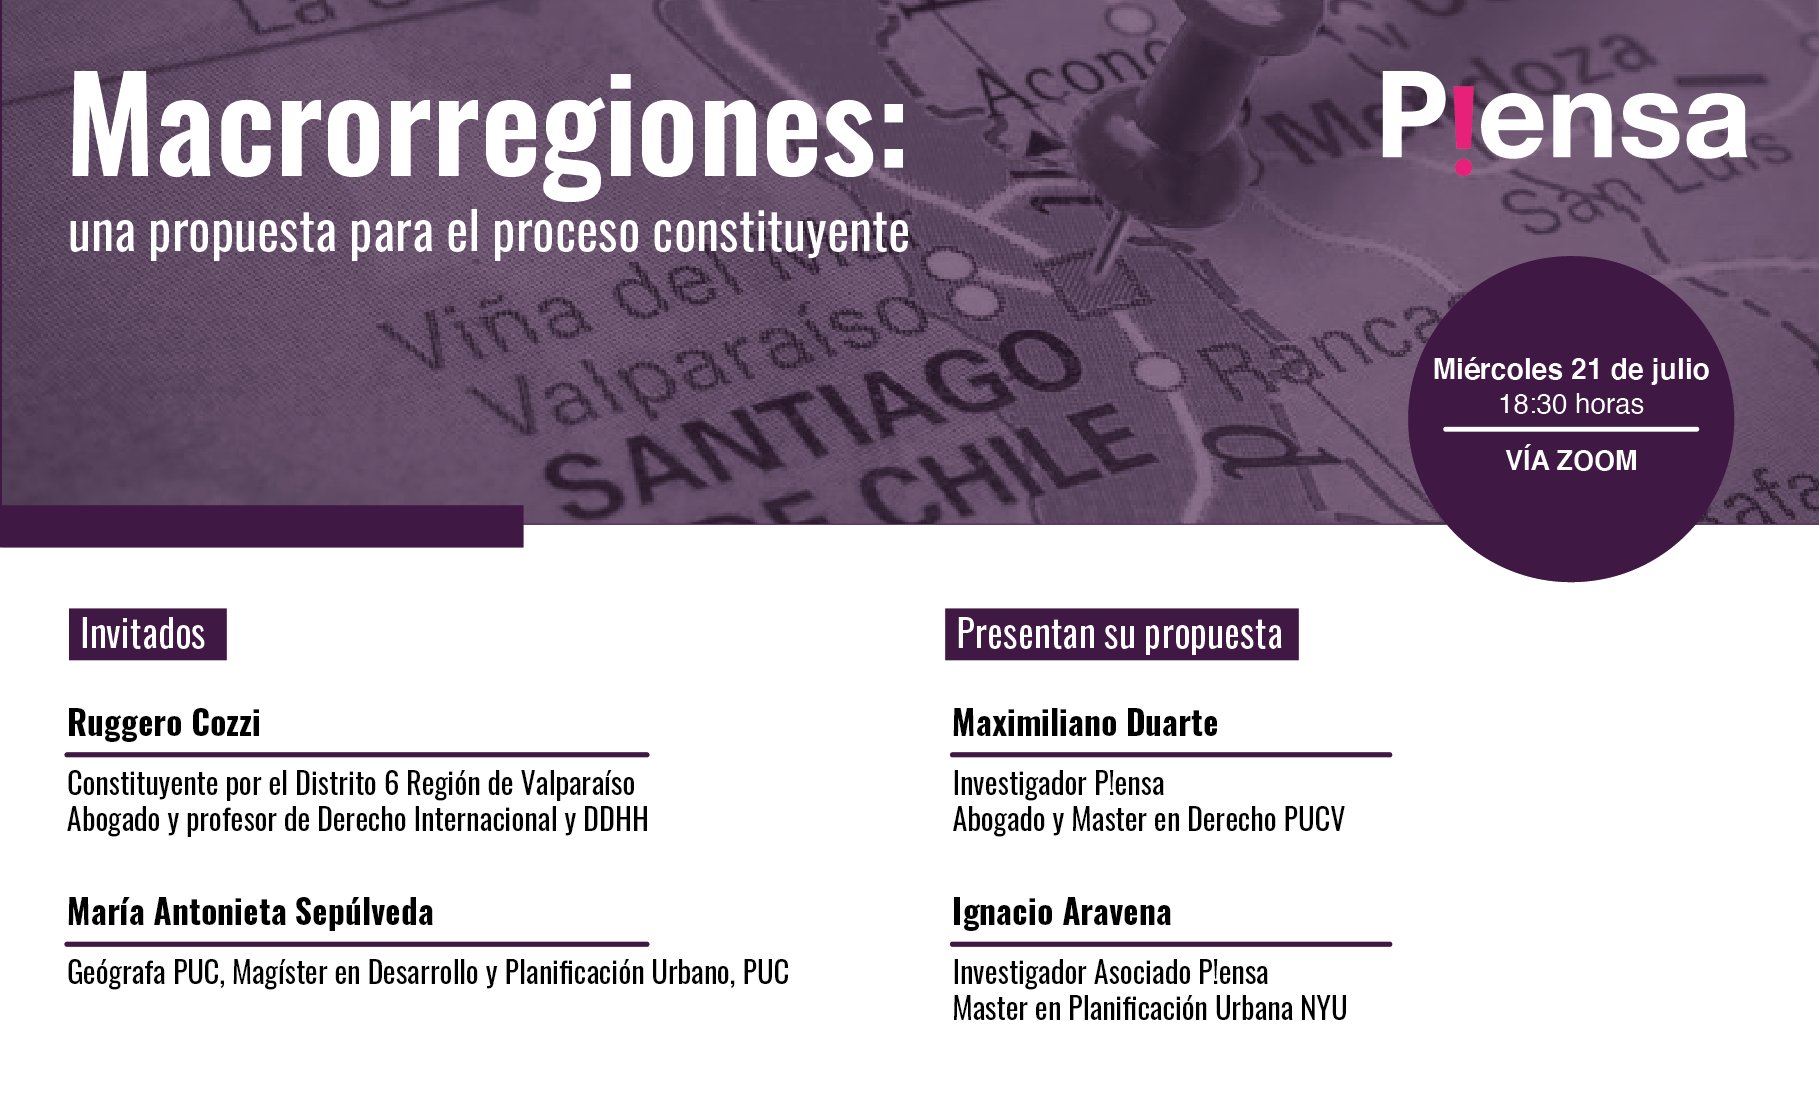 Fundación P!ensa invita a la presentación del informe “Macrorregiones: una propuesta para el proceso constituyente”